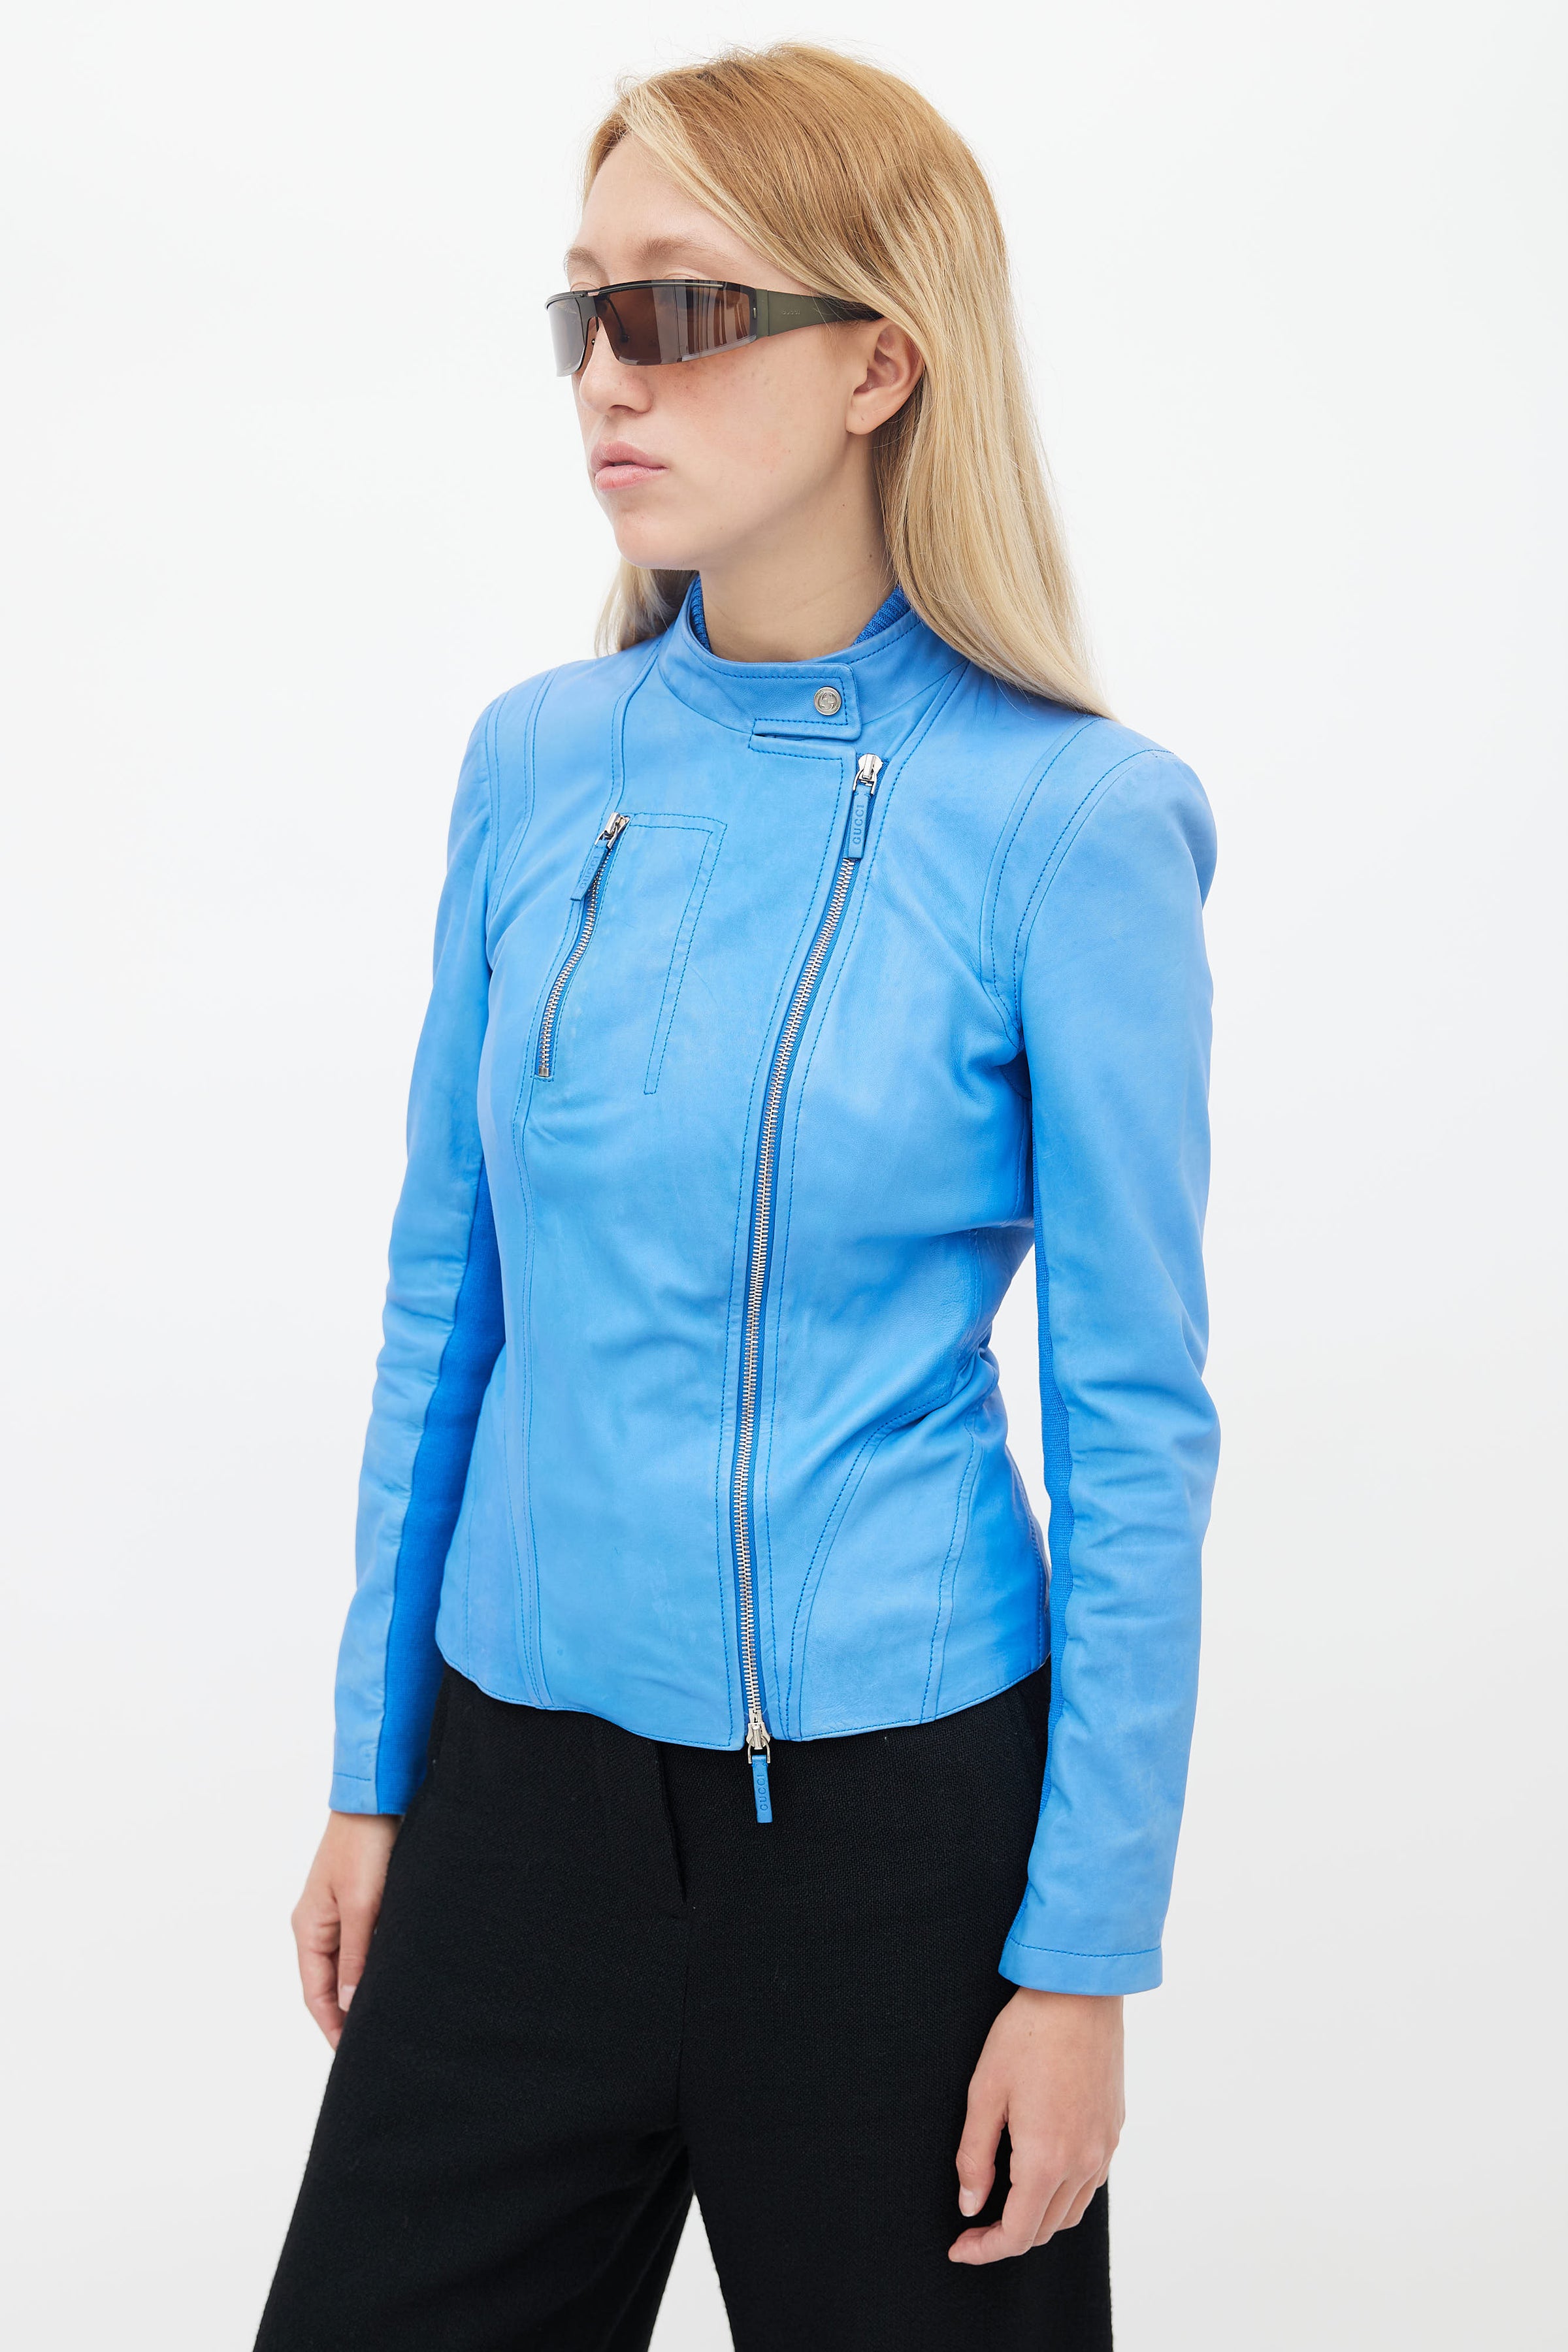 Fremragende Medarbejder Claire Gucci // Blue Leather Asymmetric Jacket – VSP Consignment